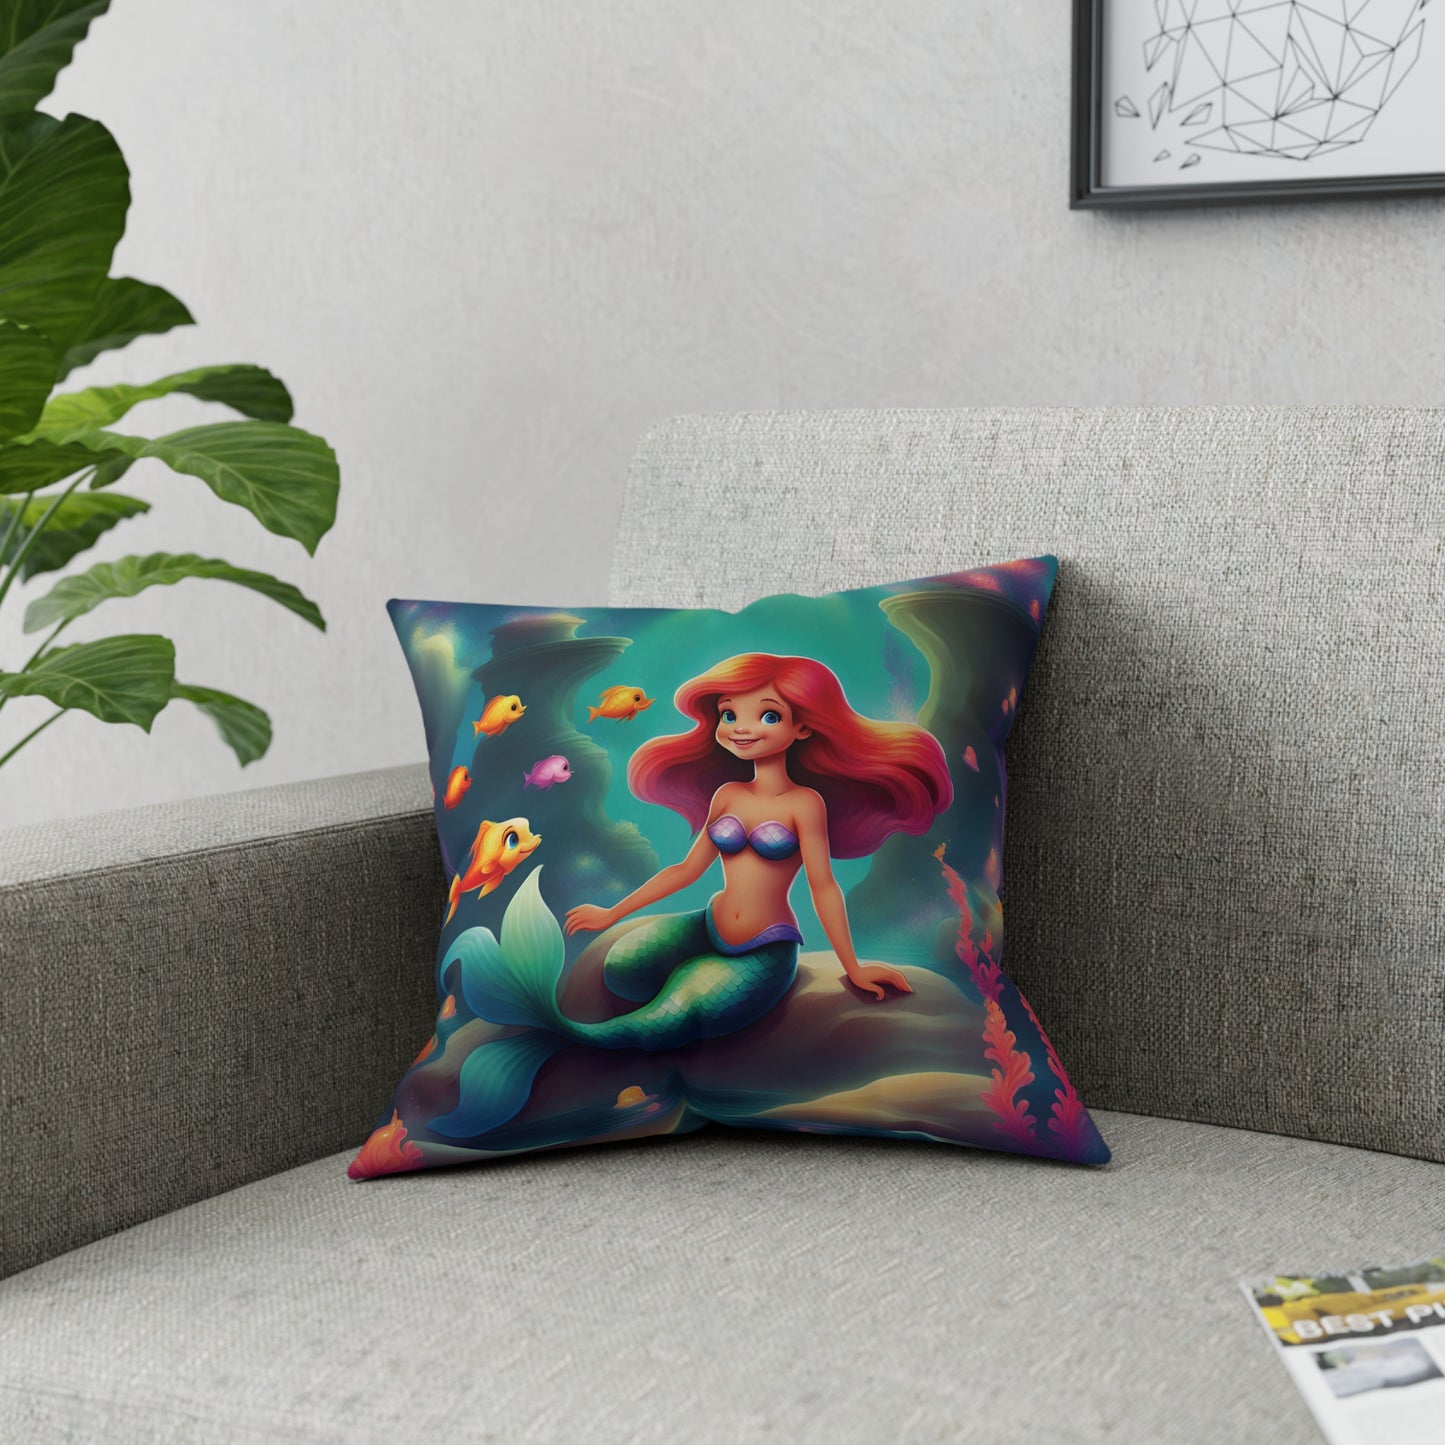 Pillow, Little Mermaid inspired theme